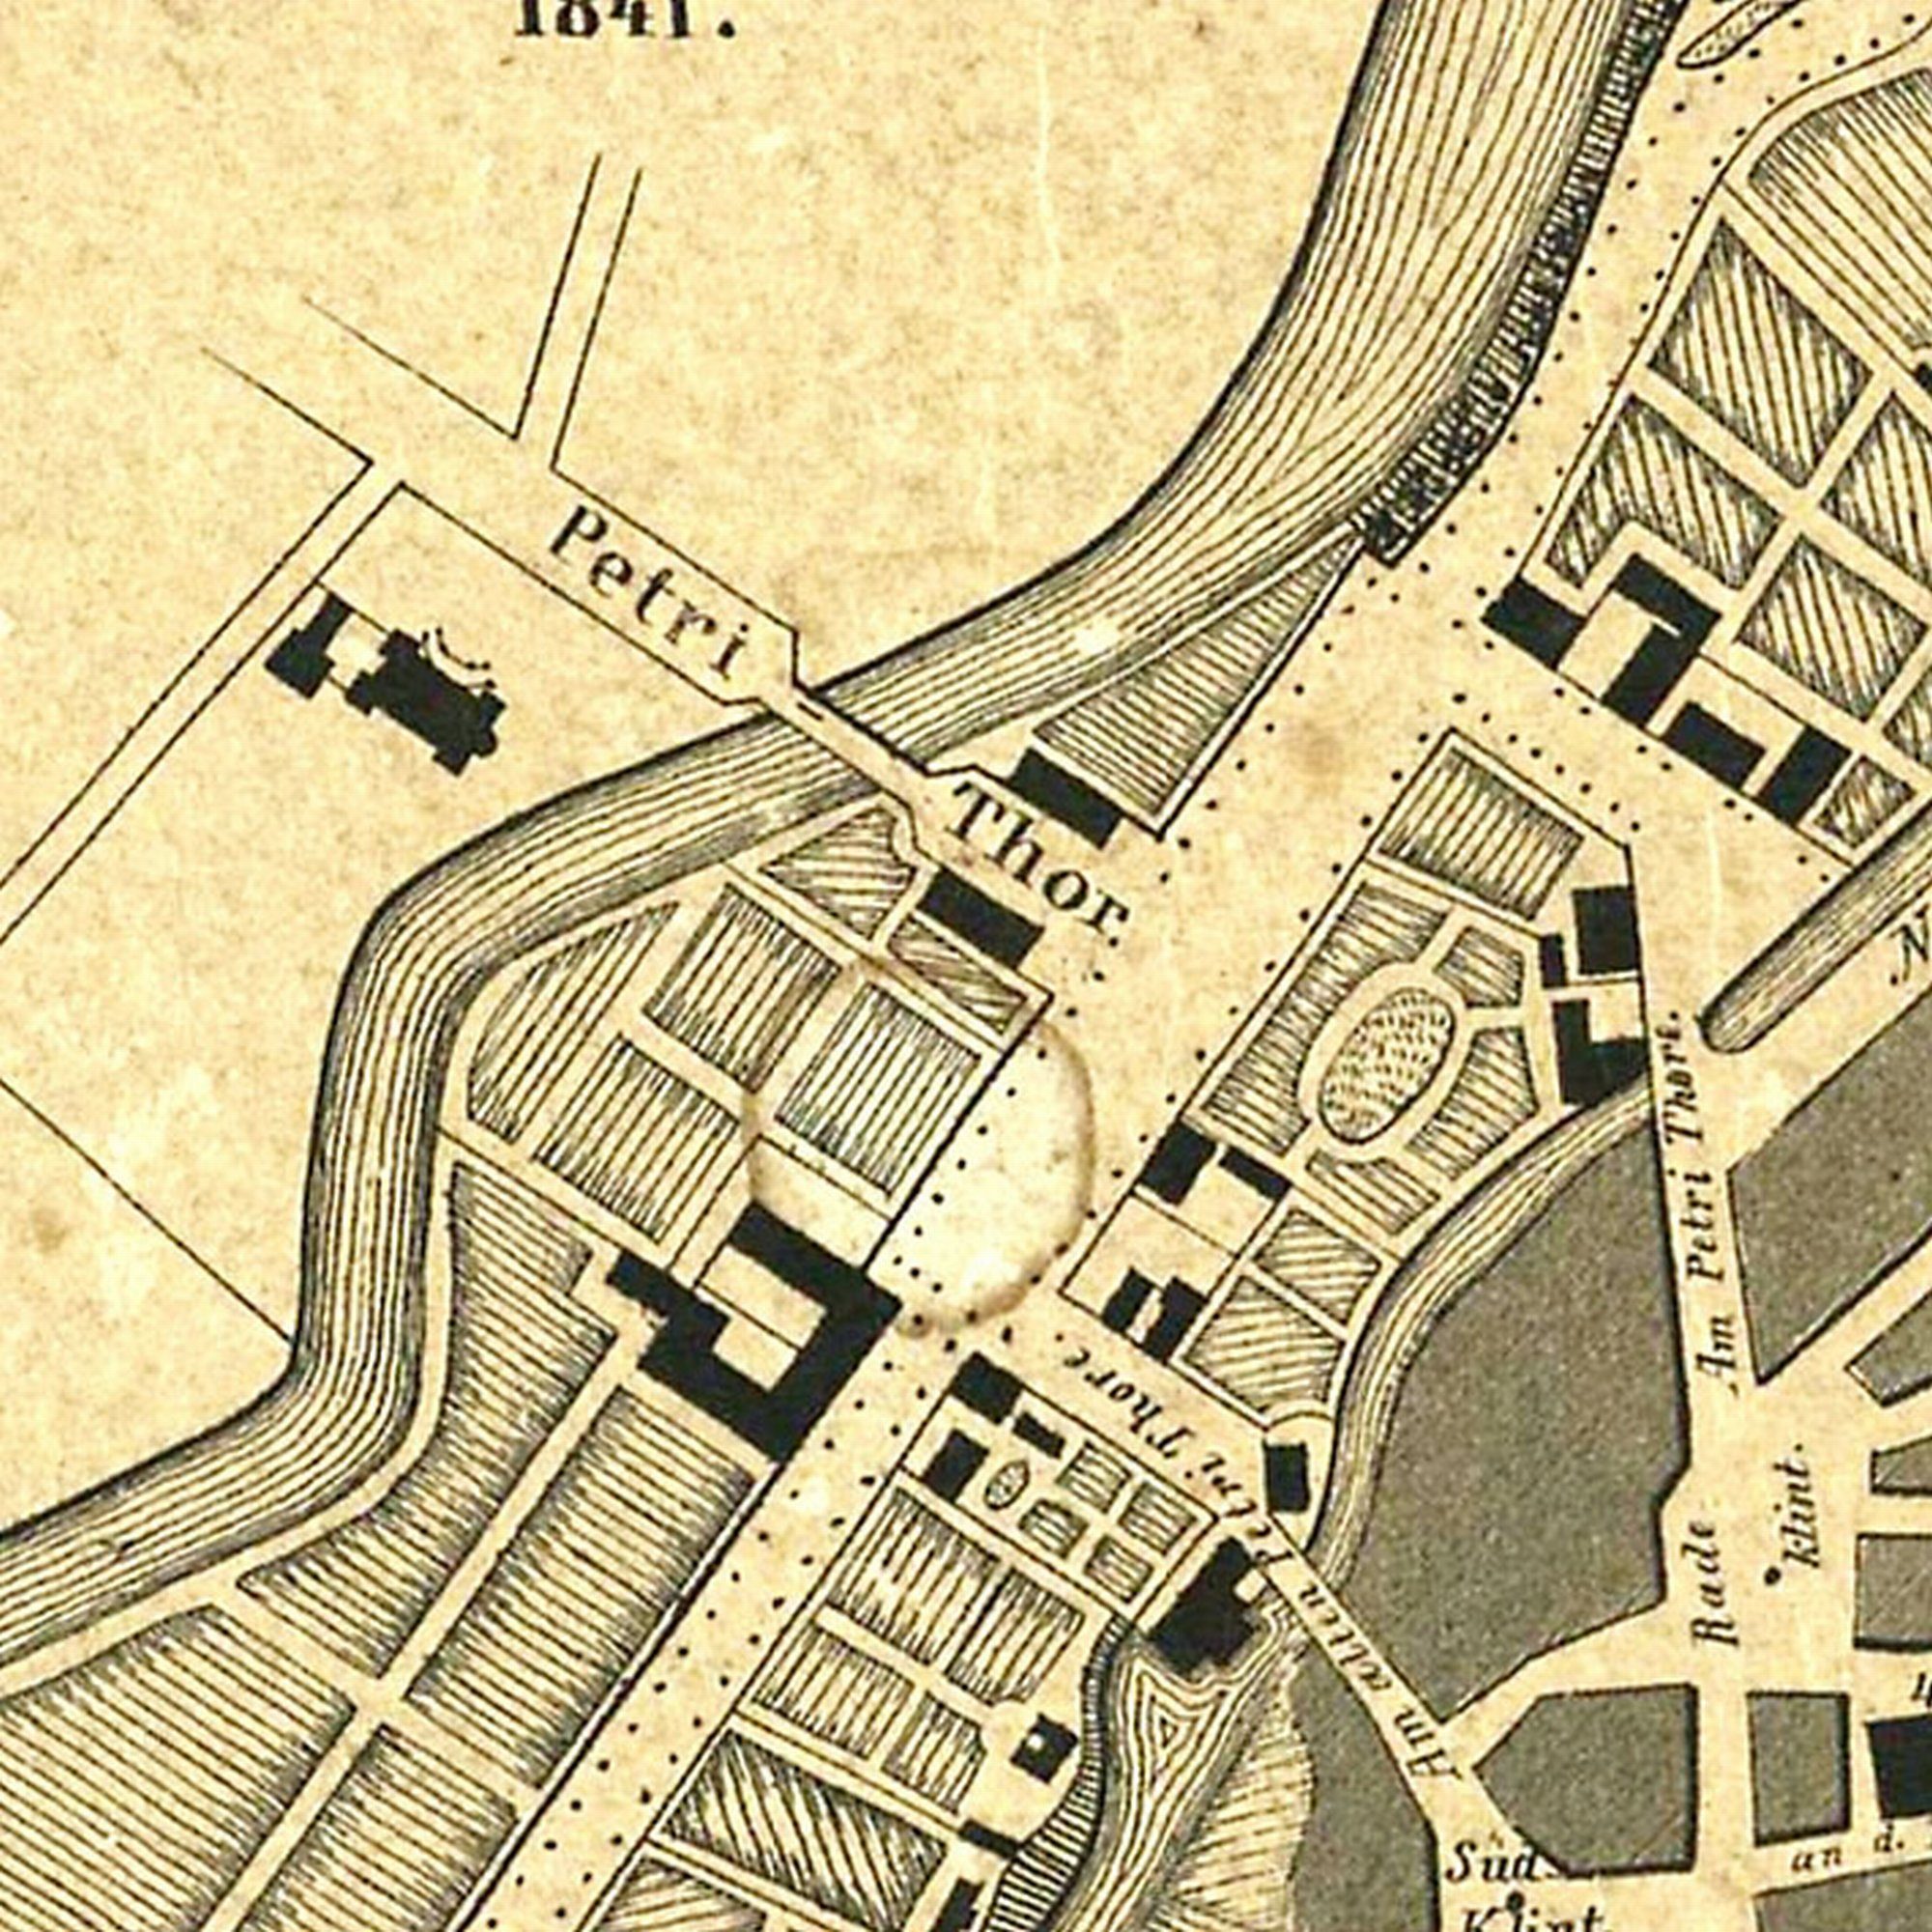 Petritorbrücke, Stadtplan, 1841